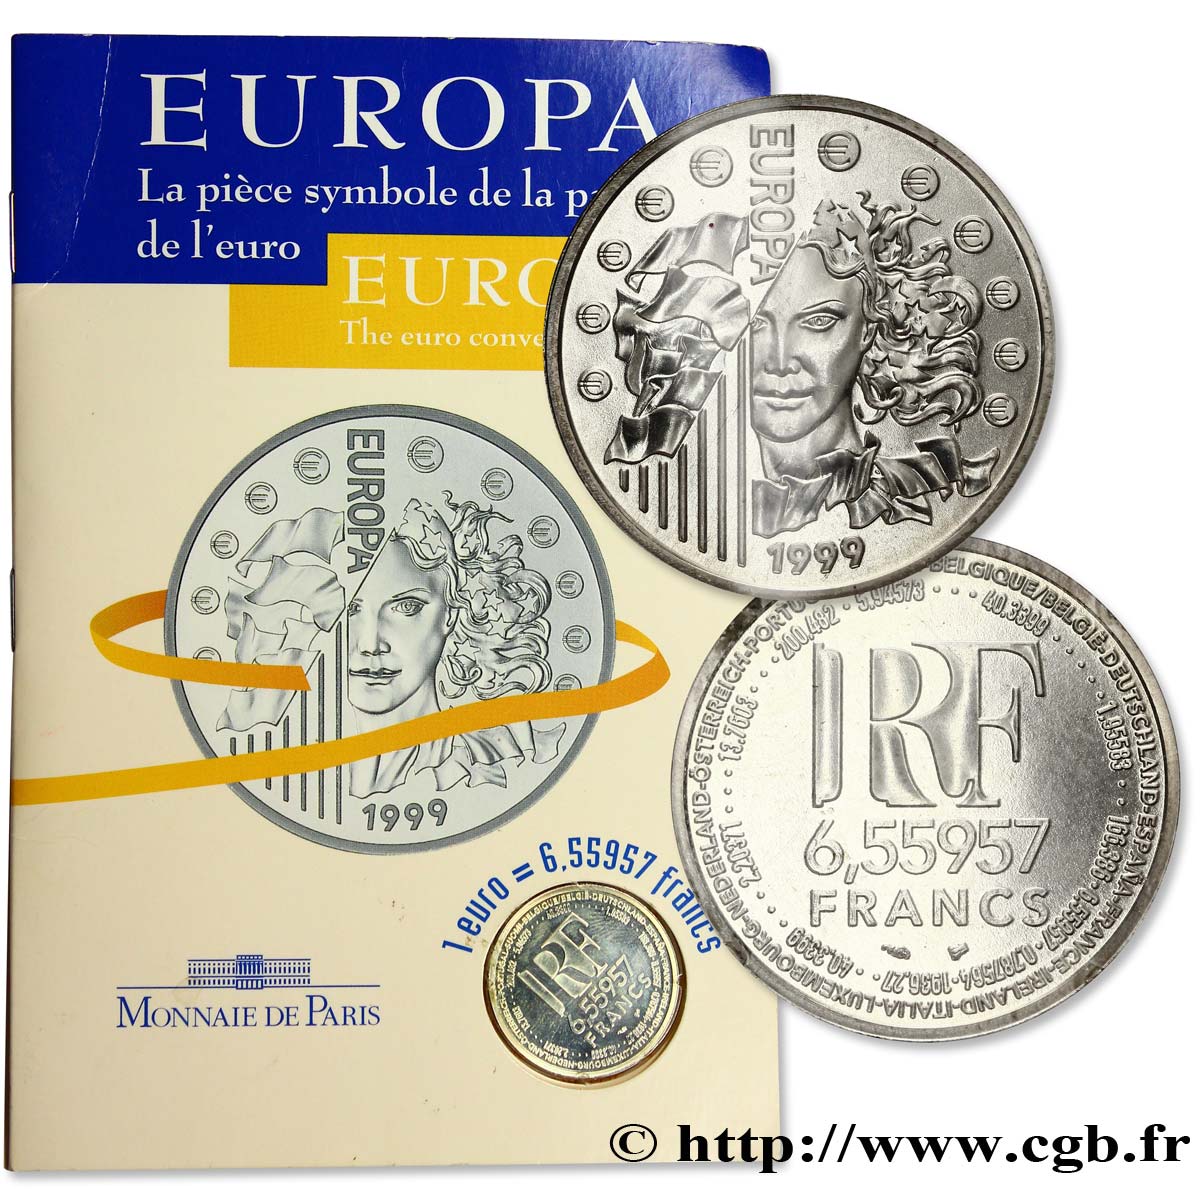 Brillant Universel 6,55957 francs - La parité 1999  F.1250 2 FDC68 